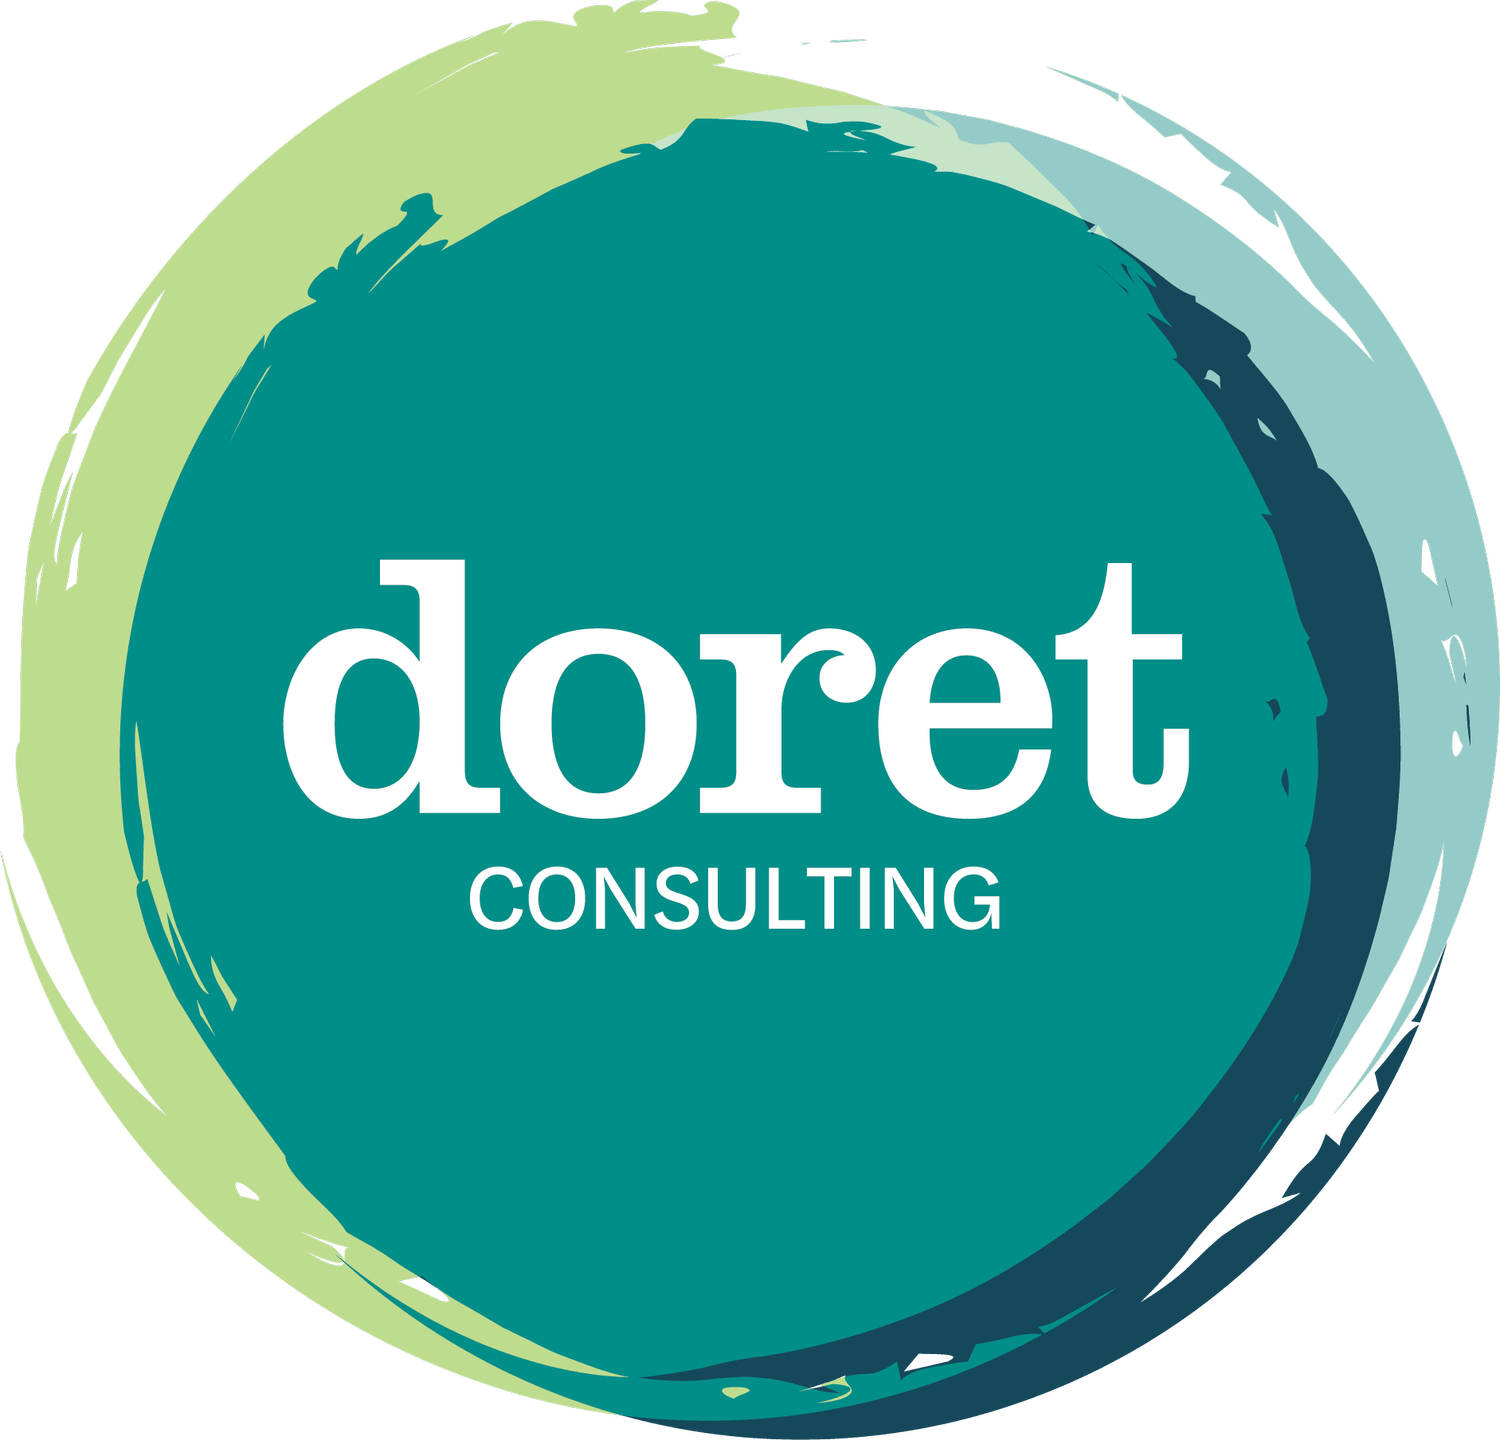 Doret Consulting